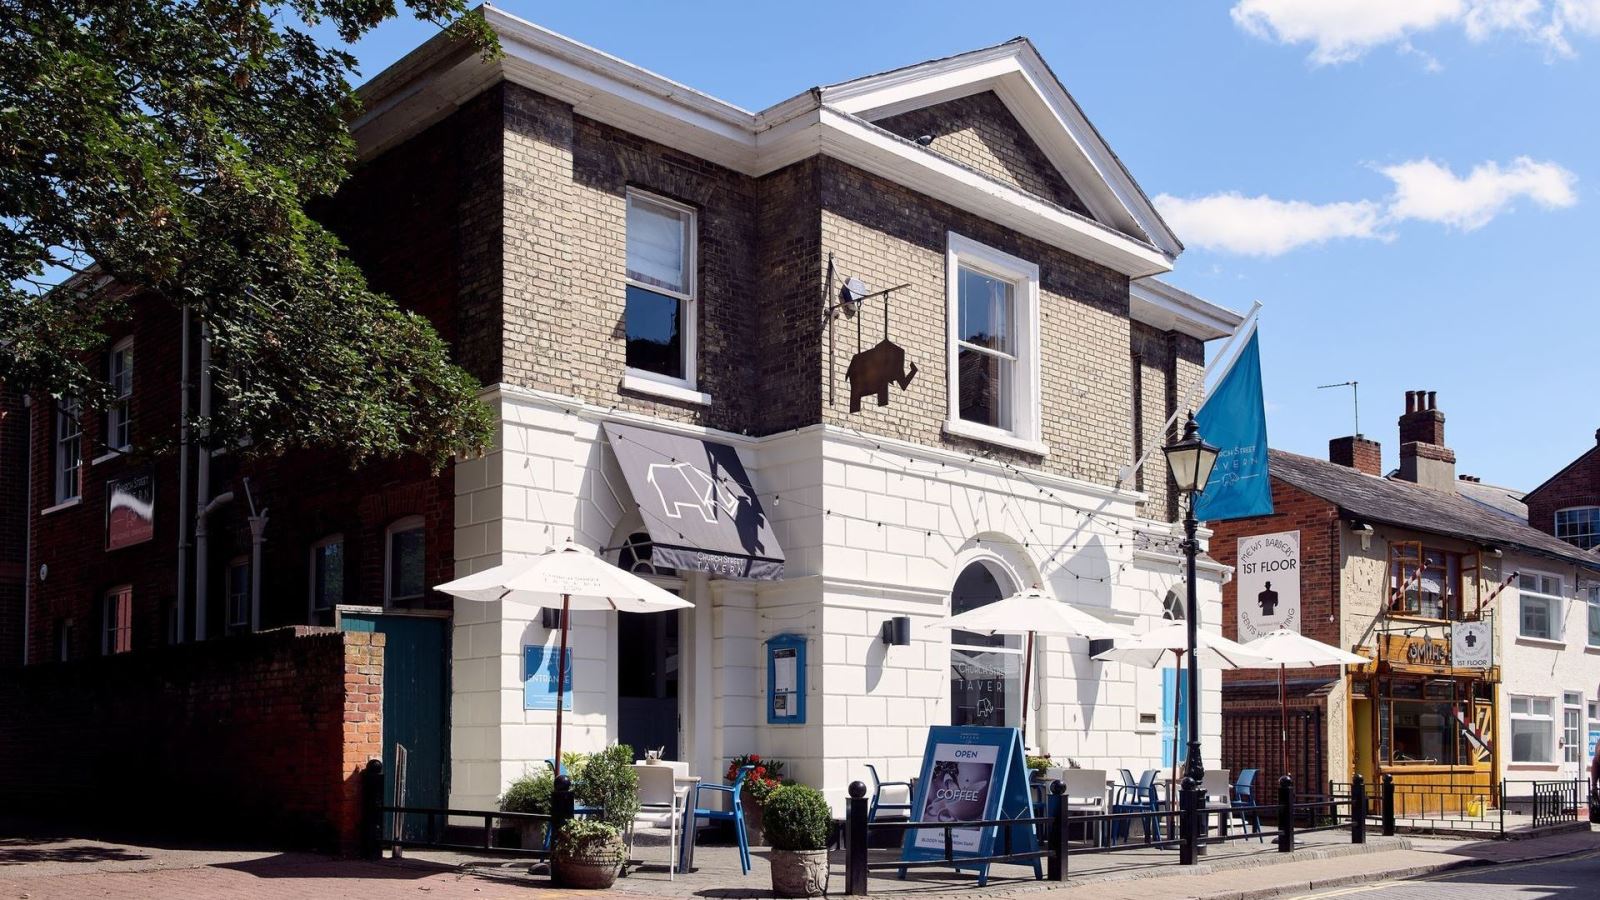 Church Street Tavern Restaurant in Colchester, Essex